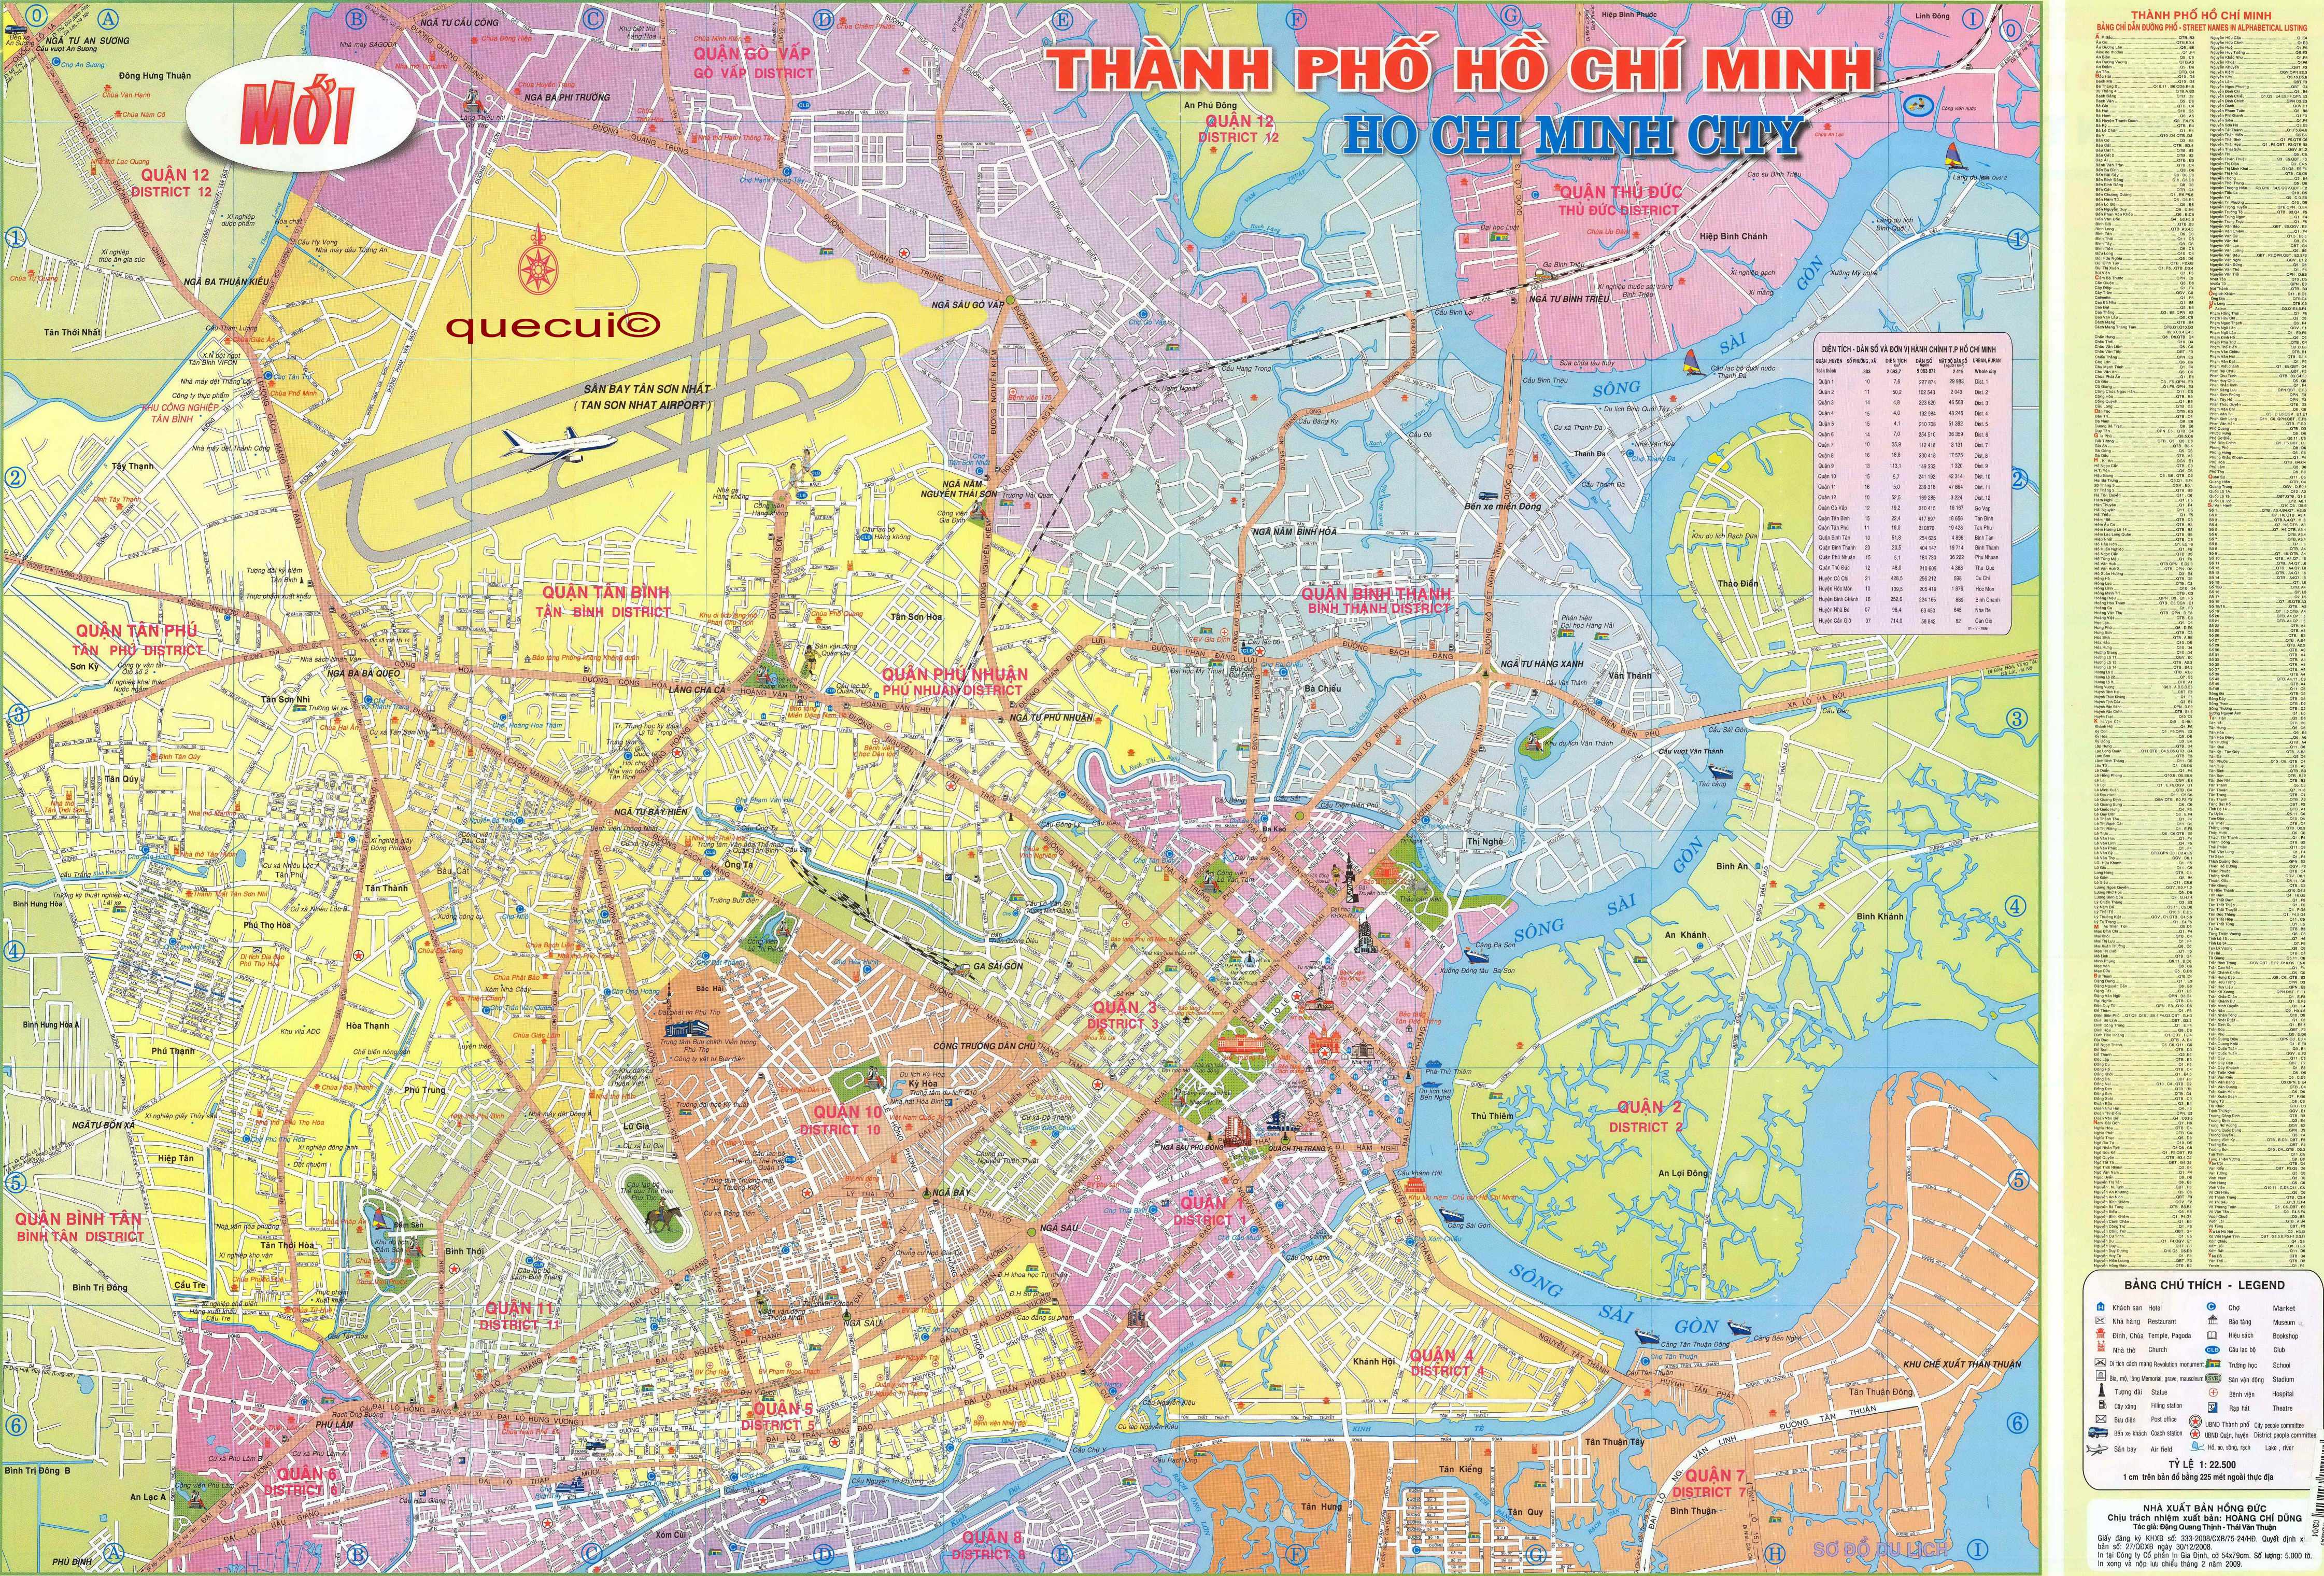 Bản đồ giao thông thành phố Hồ Chí Minh chi tiết